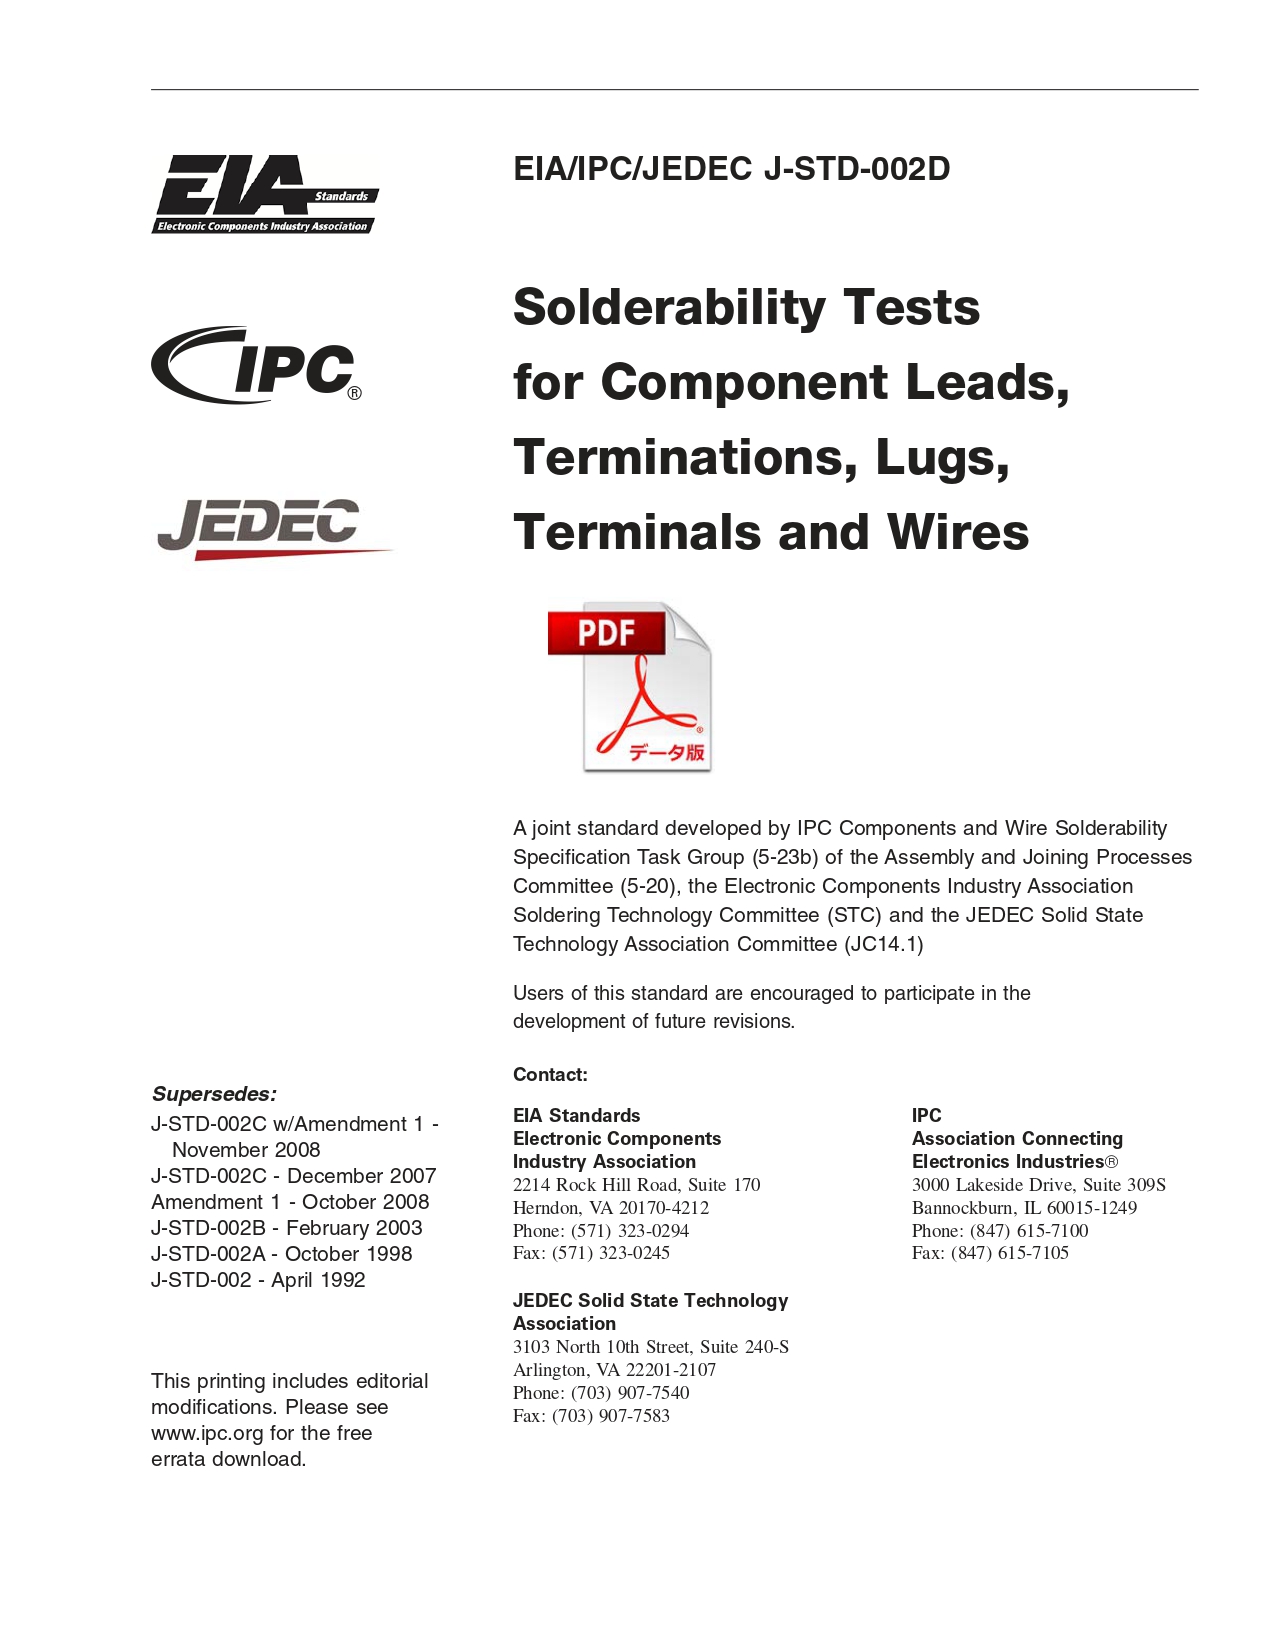 ◆旧版◆［英語版］EIA/IPC/JEDEC-J-STD-002D: Solderability Tests for Component Leads, Terminations, Lugs, Terminals and Wires